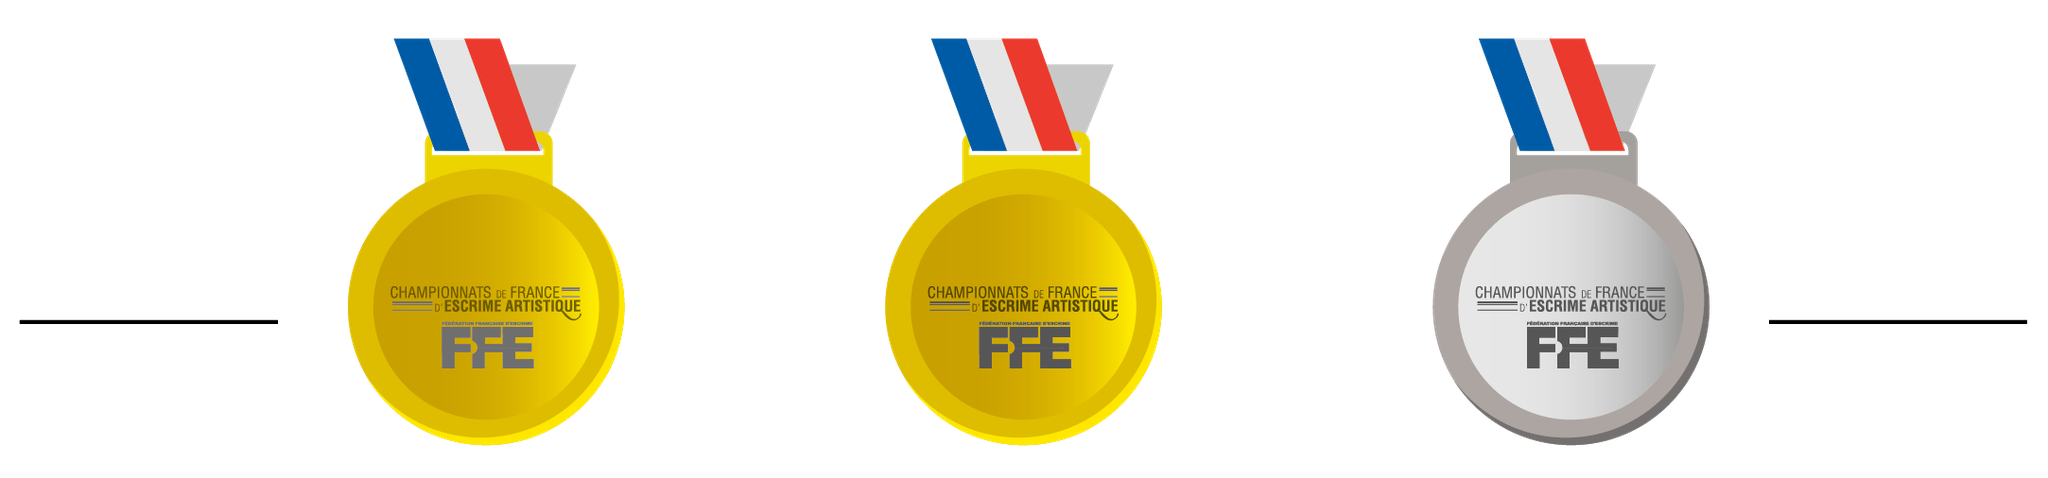 Double champion de France & vice-champion de France d'Escrime Artistique 2020